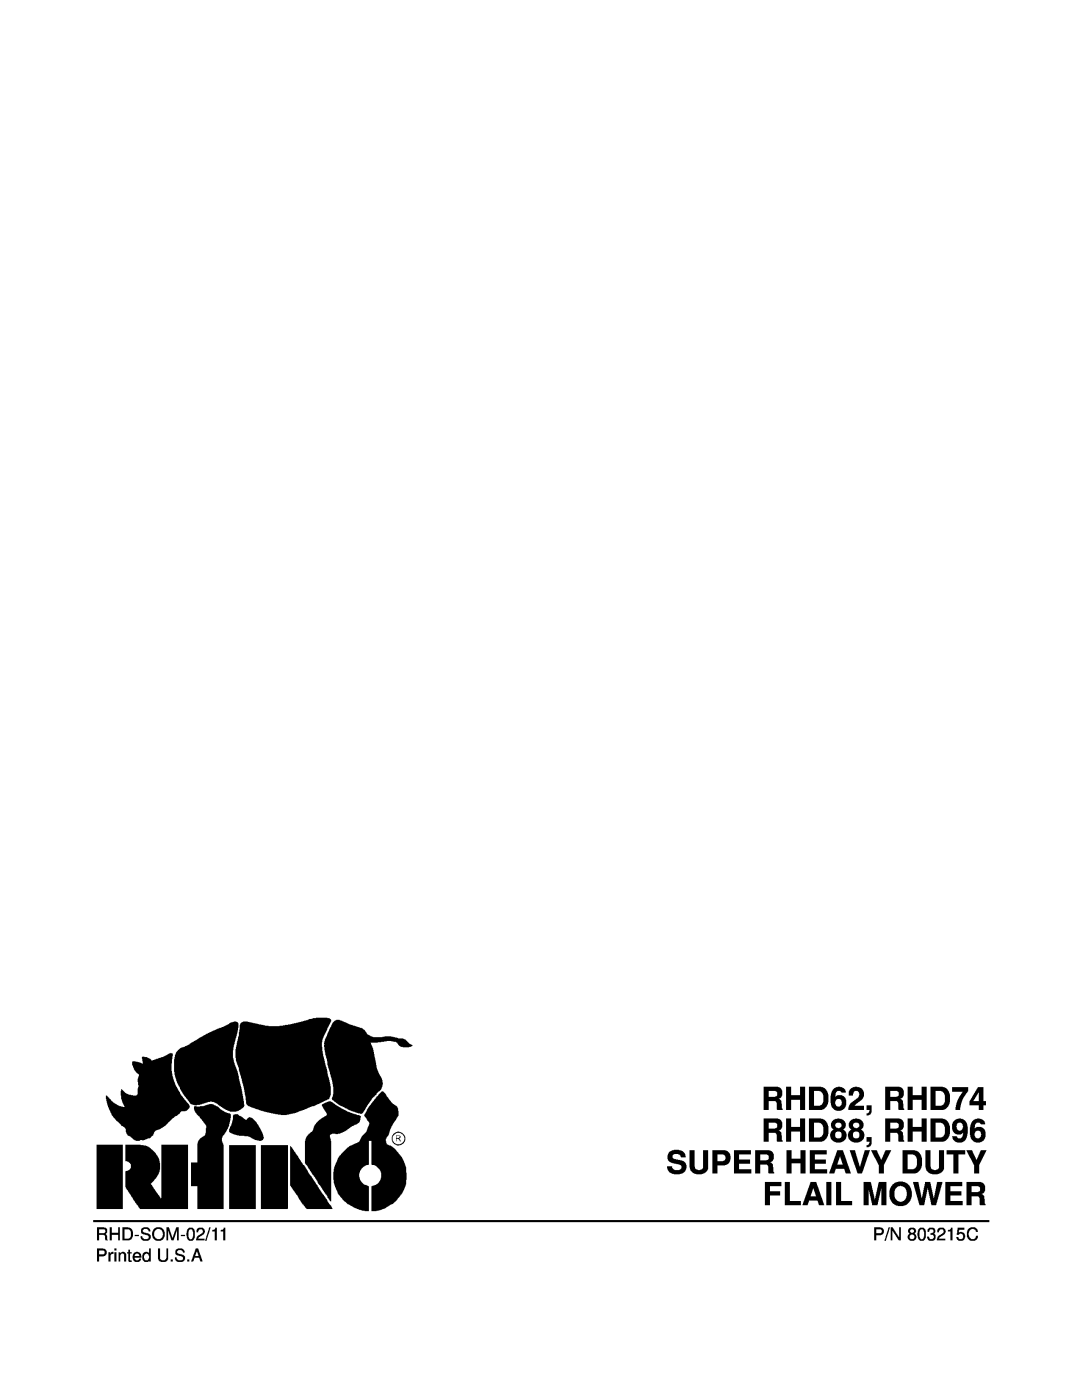 Rhino Mounts manual RHD62, RHD74 RHD88, RHD96 SUPER HEAVY DUTY FLAIL MOWER, RHD-SOM-02/11, P/N 803215C, Printed U.S.A 